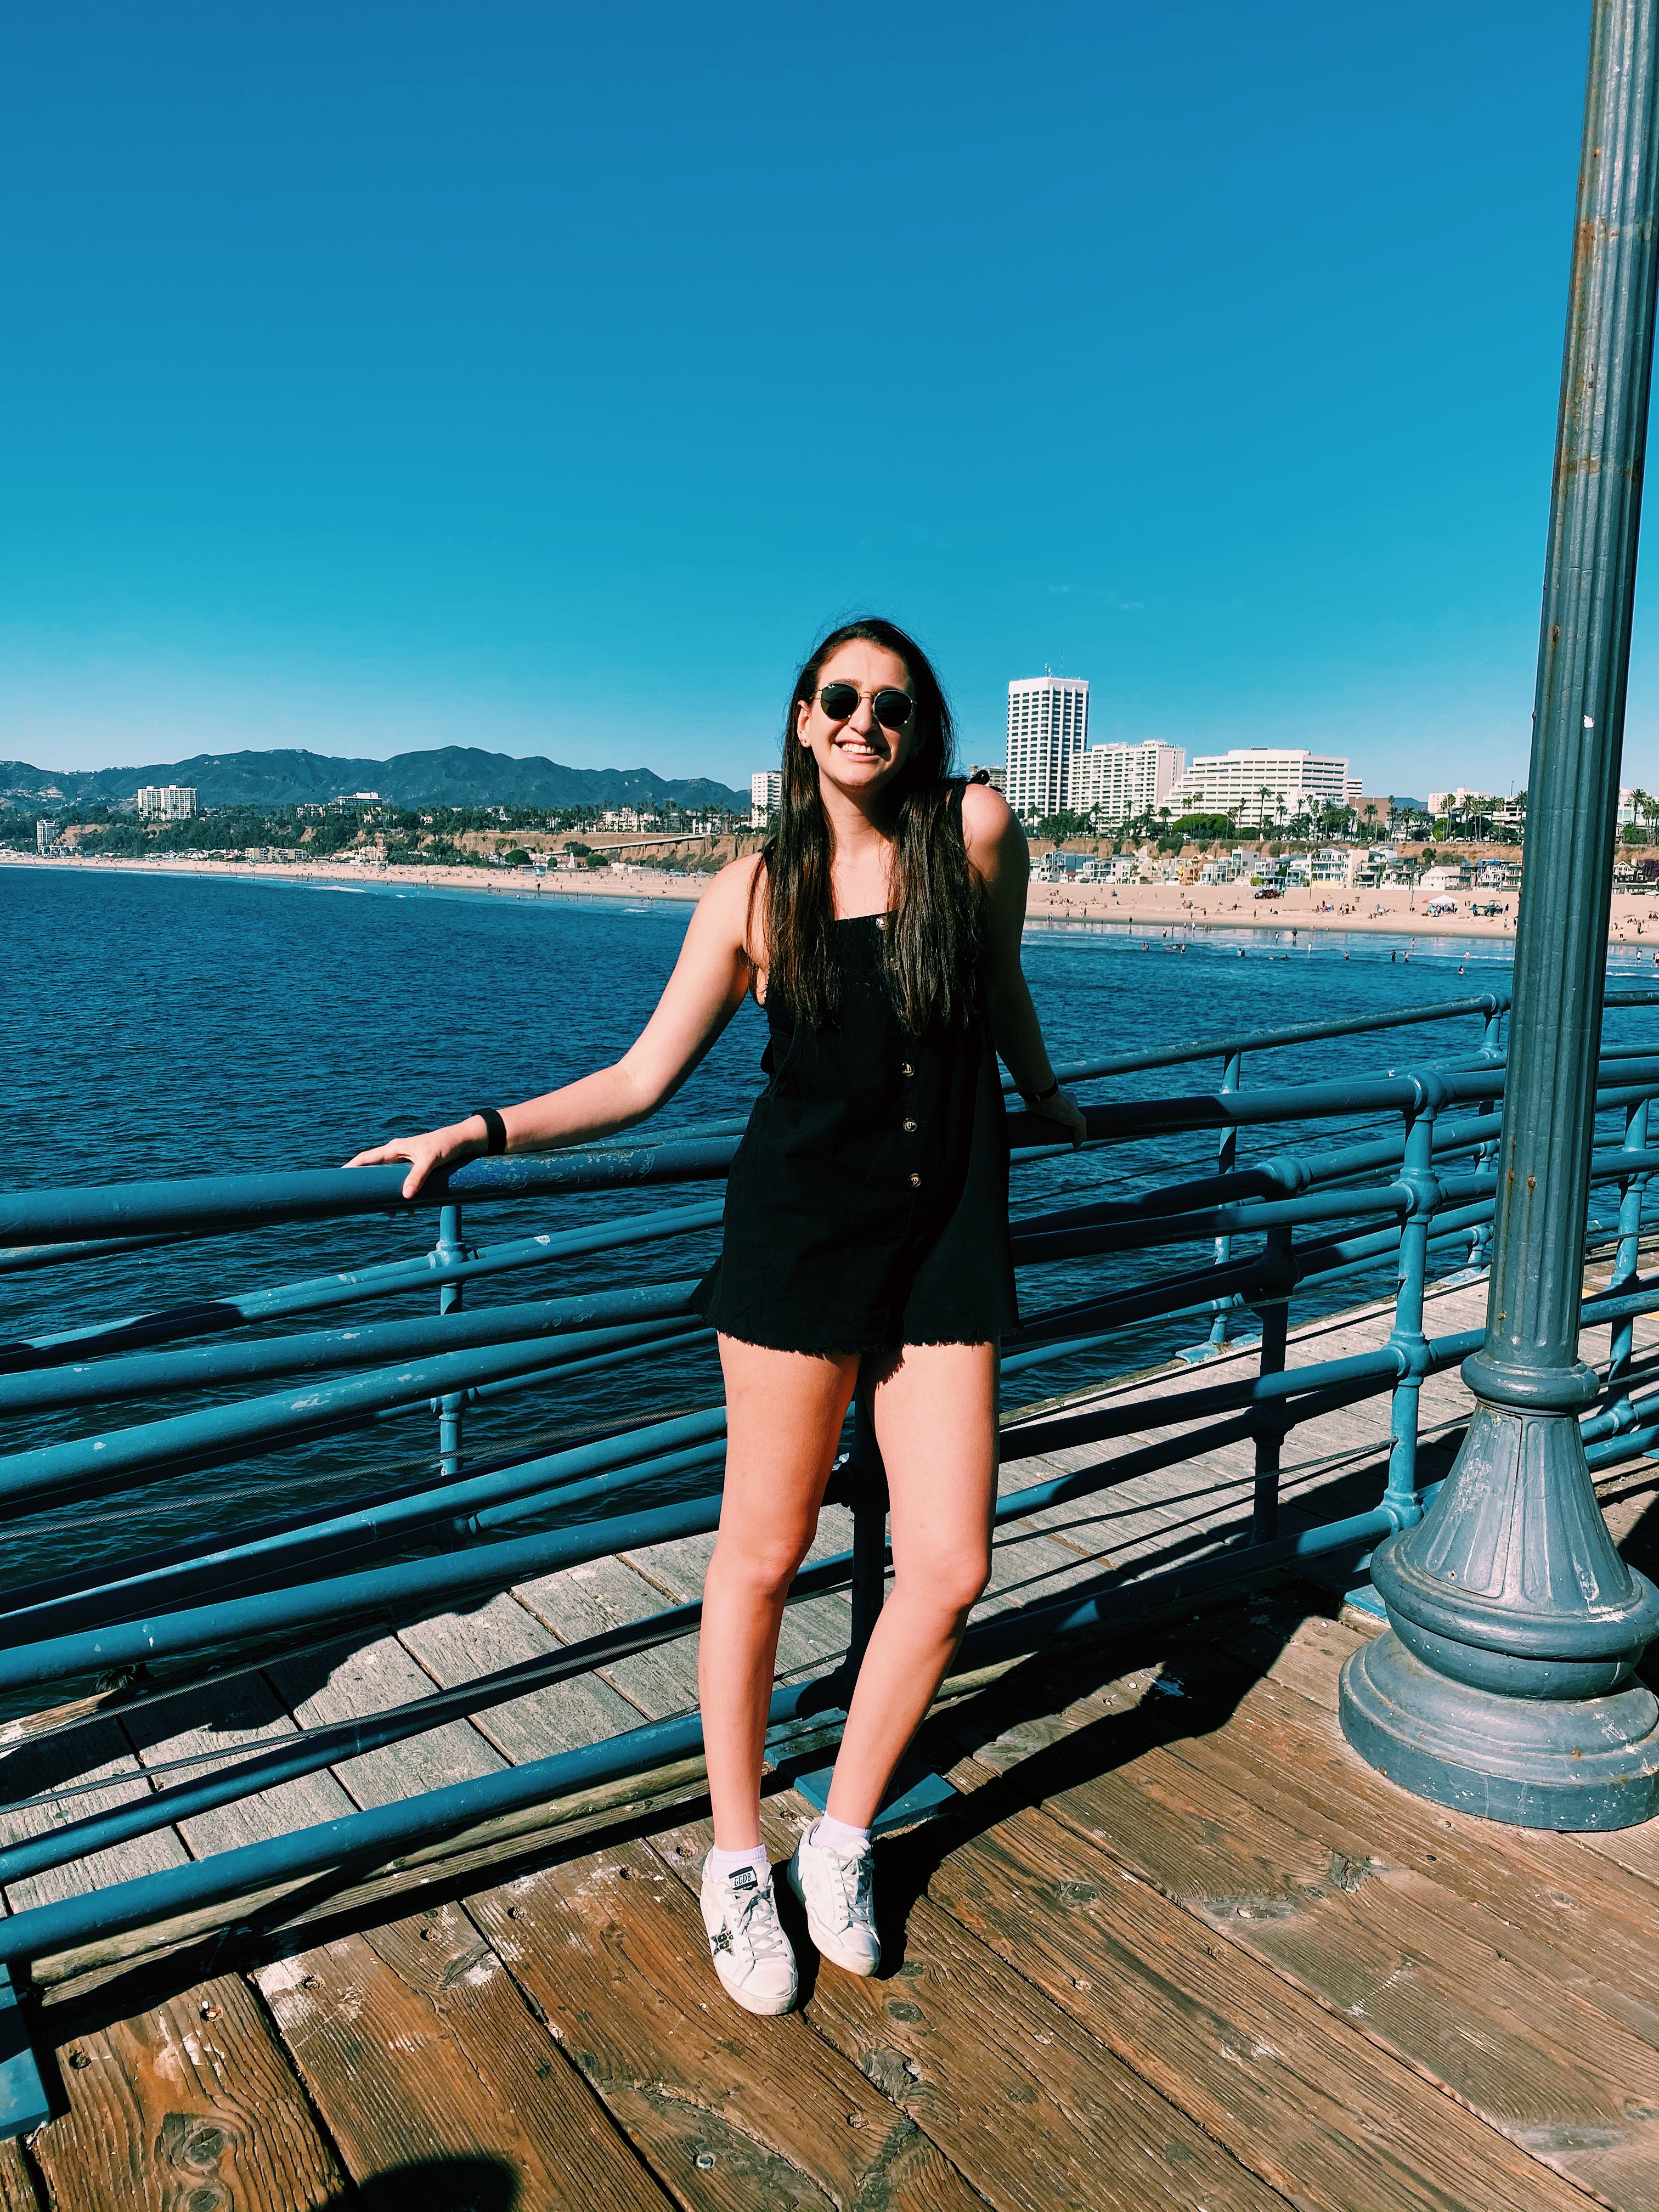 Lindsay at the Santa Monica Pier